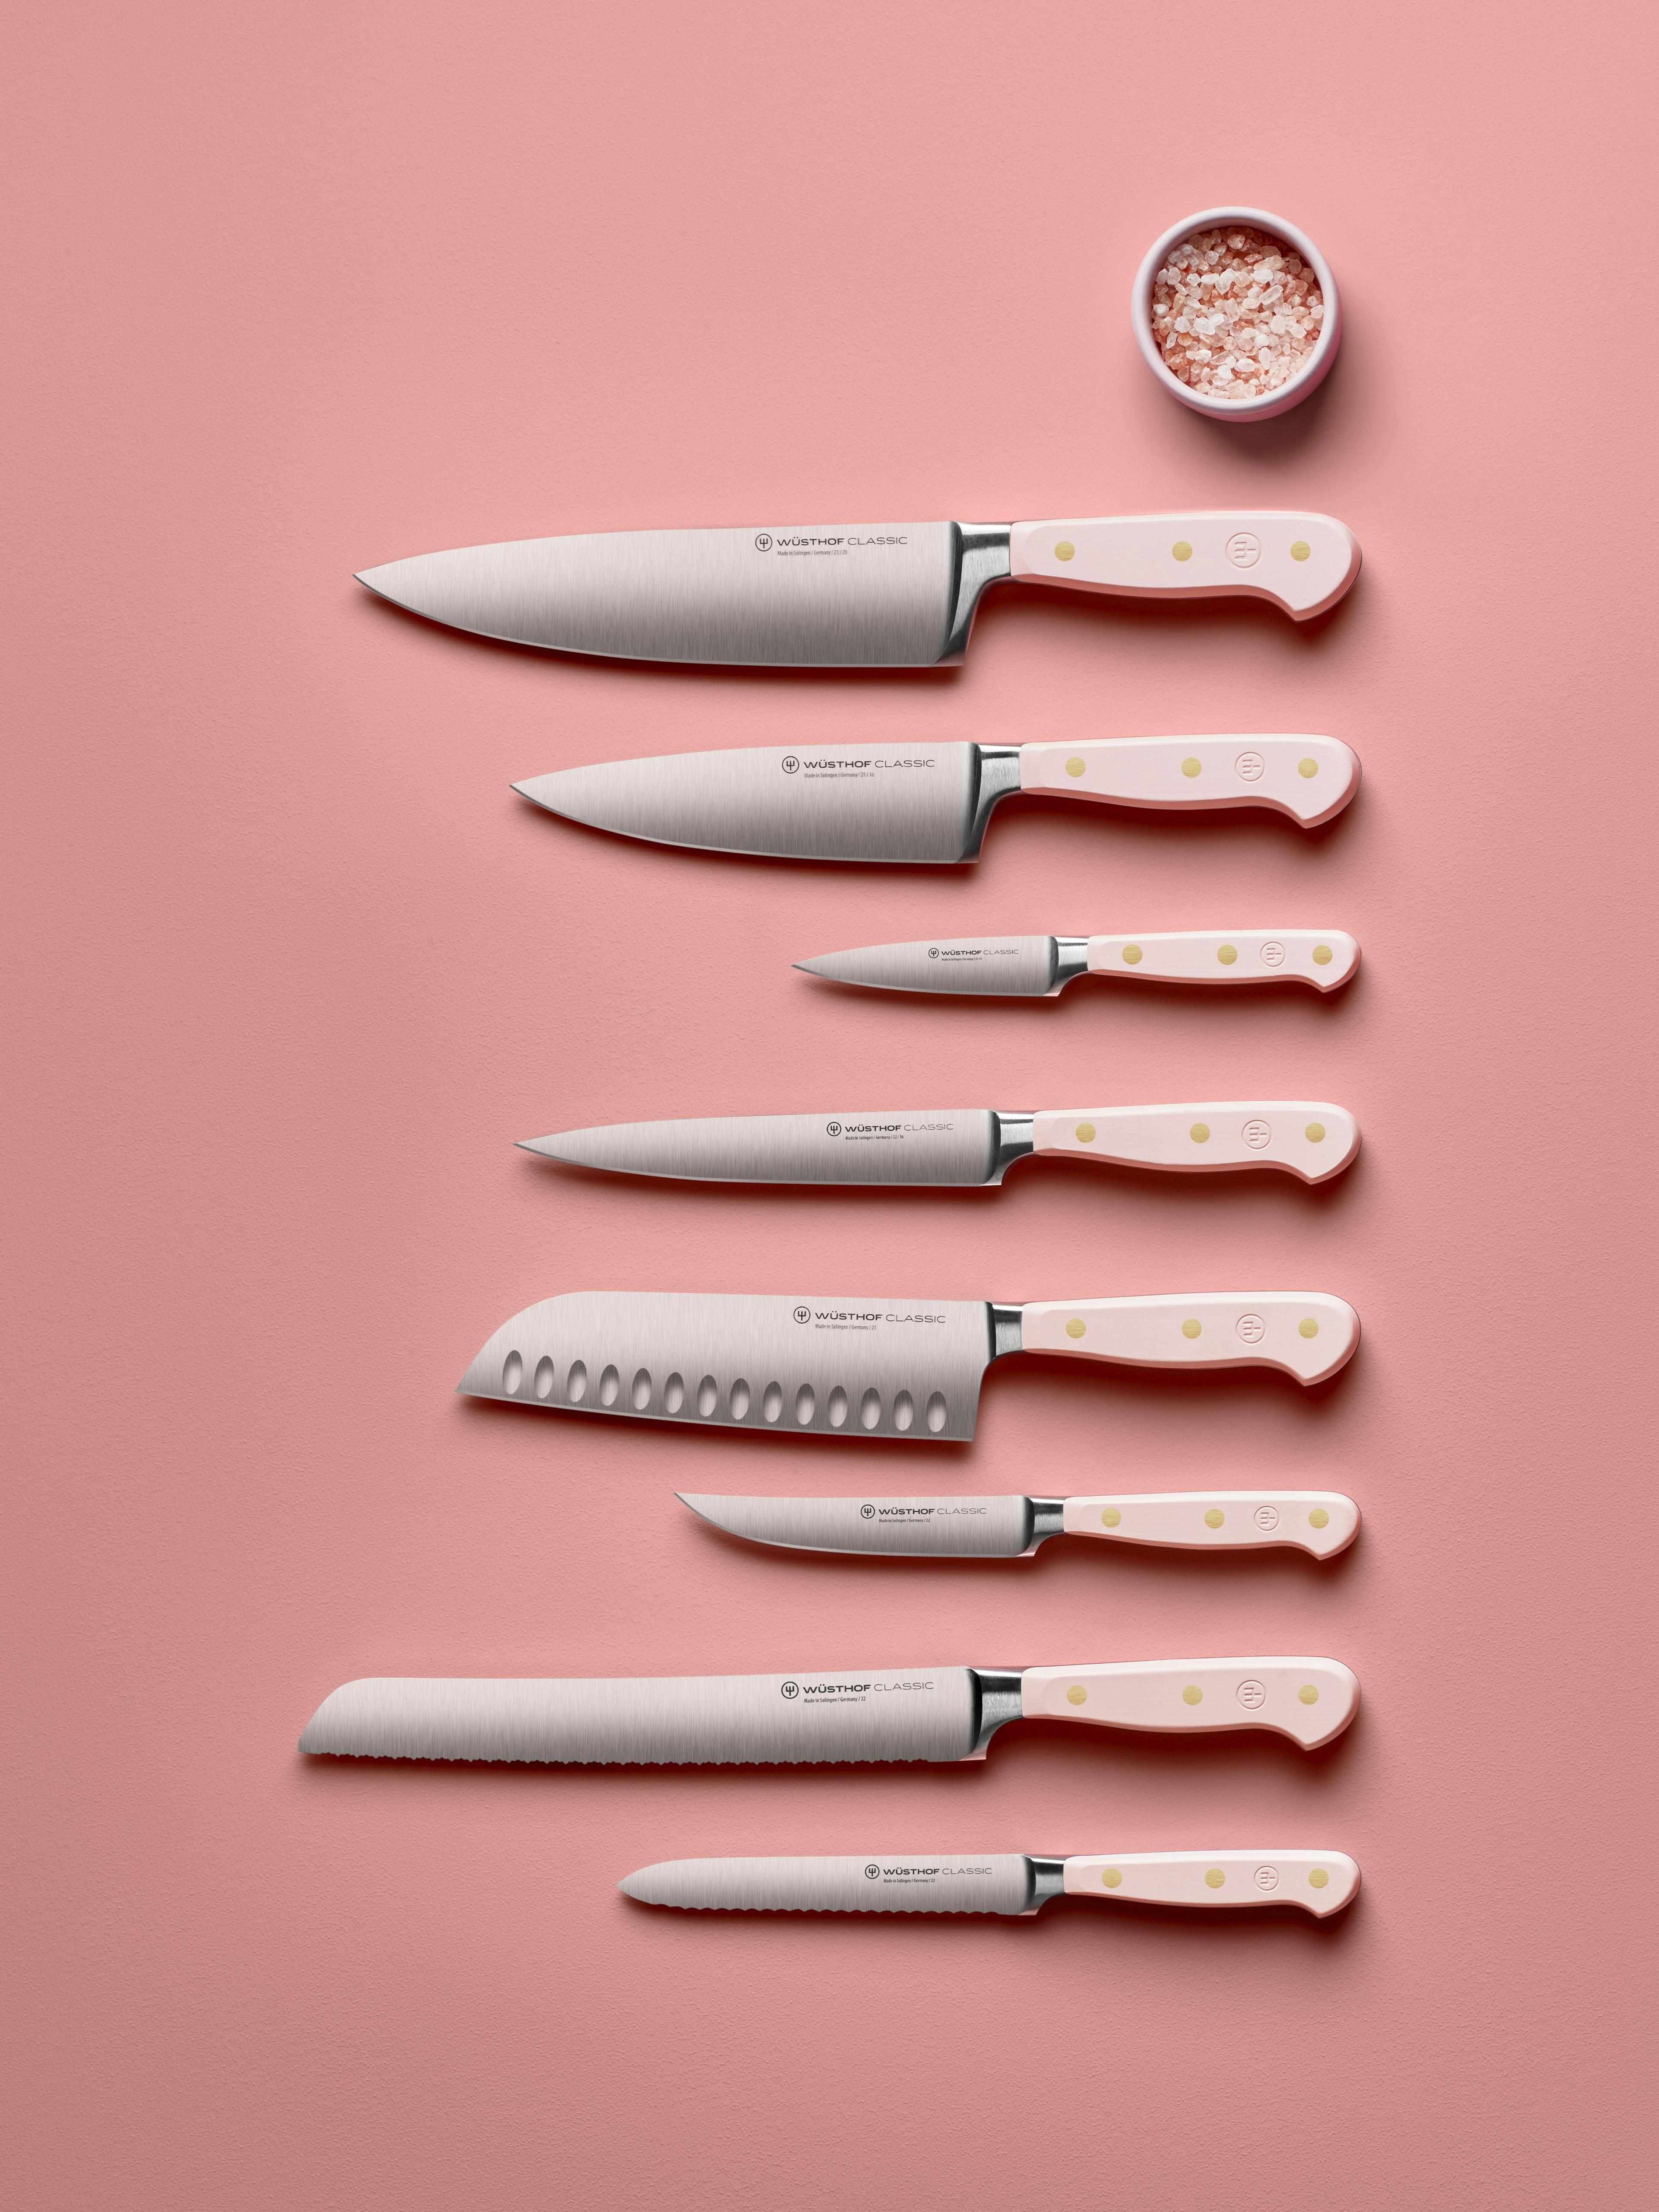 PHS knives